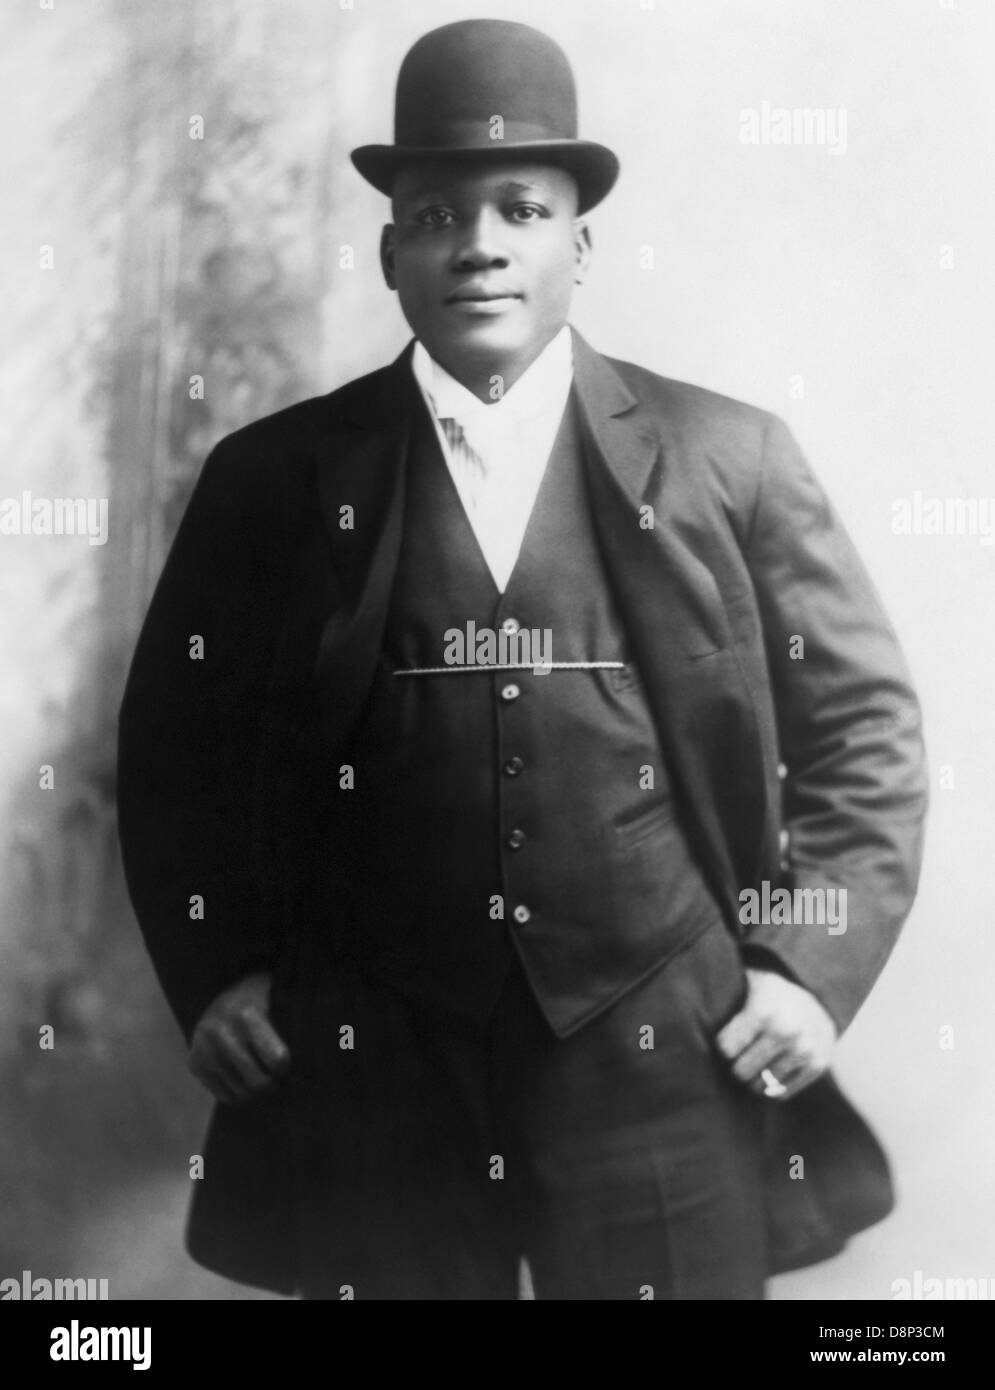 Oldtimer-Foto des Boxers Jack Johnson (1878 – 1946) – Johnson, bekannt als „der Galveston-Riese“, war der erste Afrikaner, der Weltmeister im Schwergewicht wurde und den Titel von 1908 bis 1915 hielt. Stockfoto